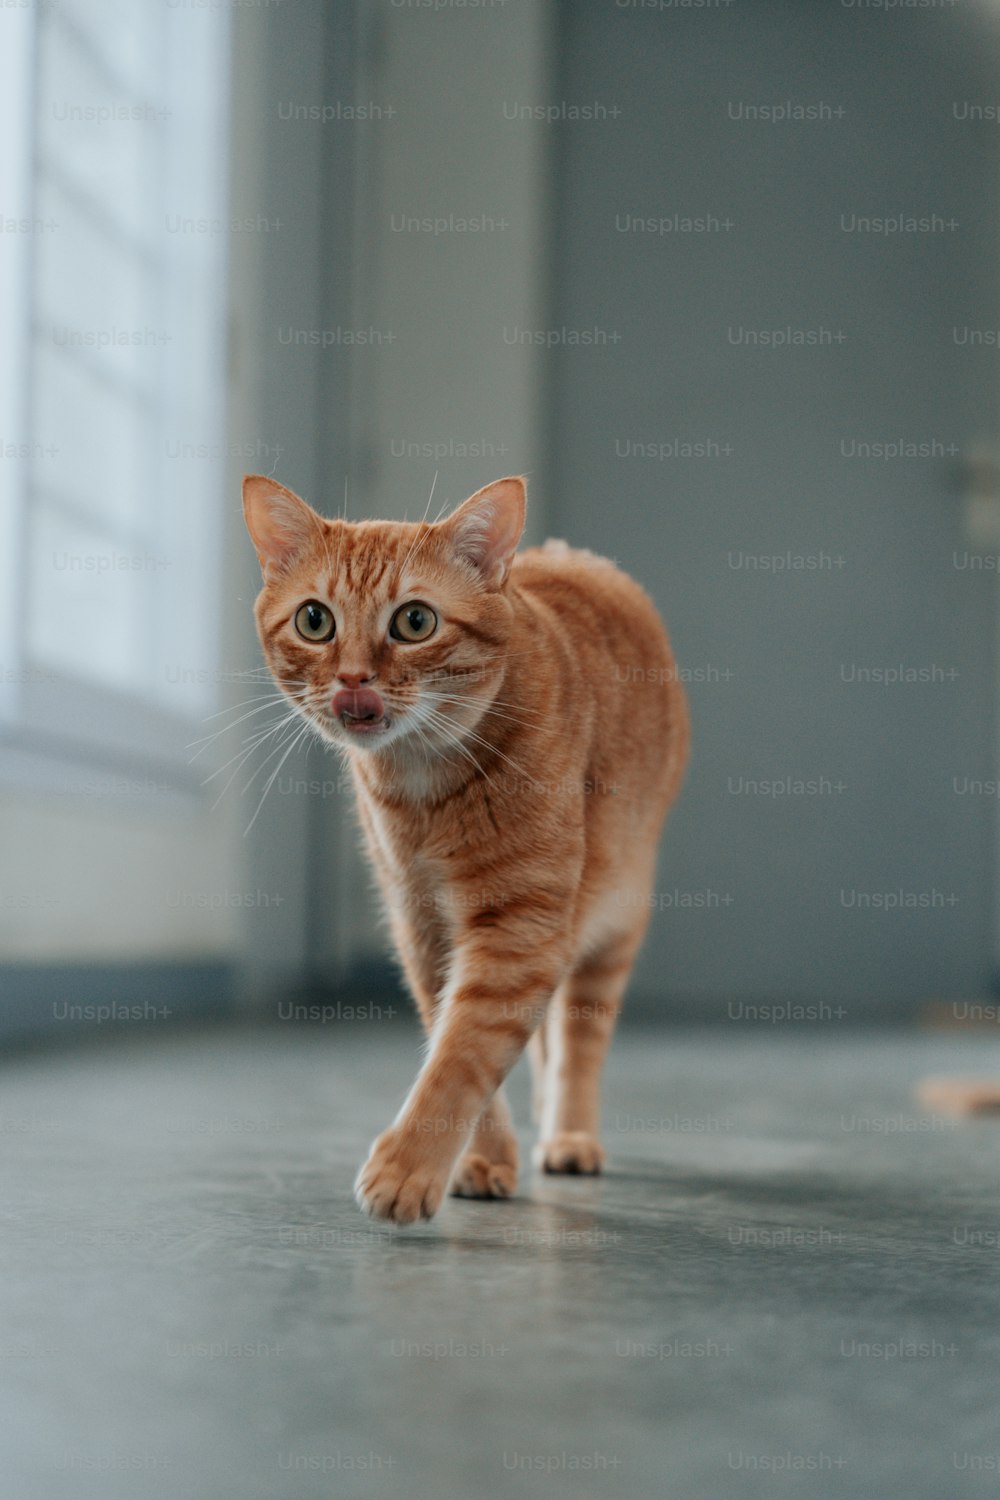 a small orange cat walking across a floor